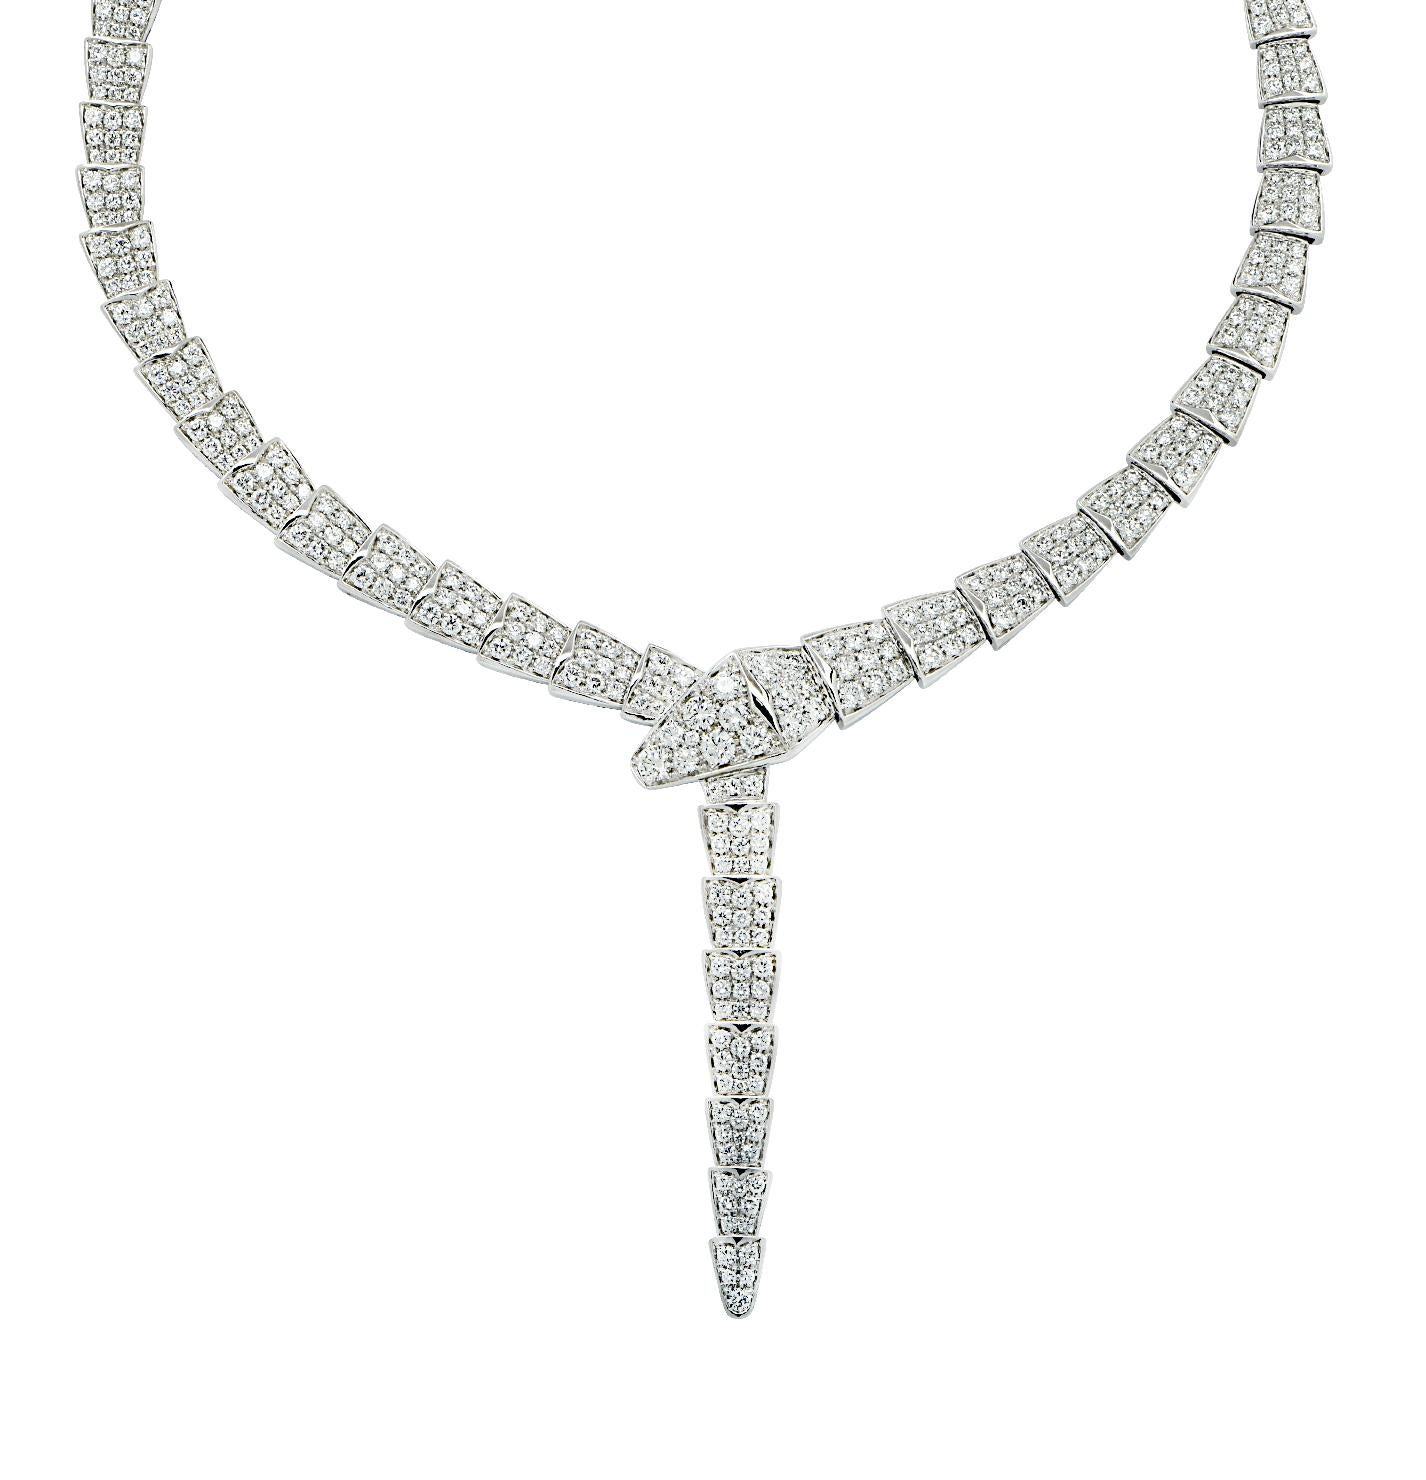 Bvlgari Serpenti Viper 14.74 Carat Diamond Necklace  For Sale 1